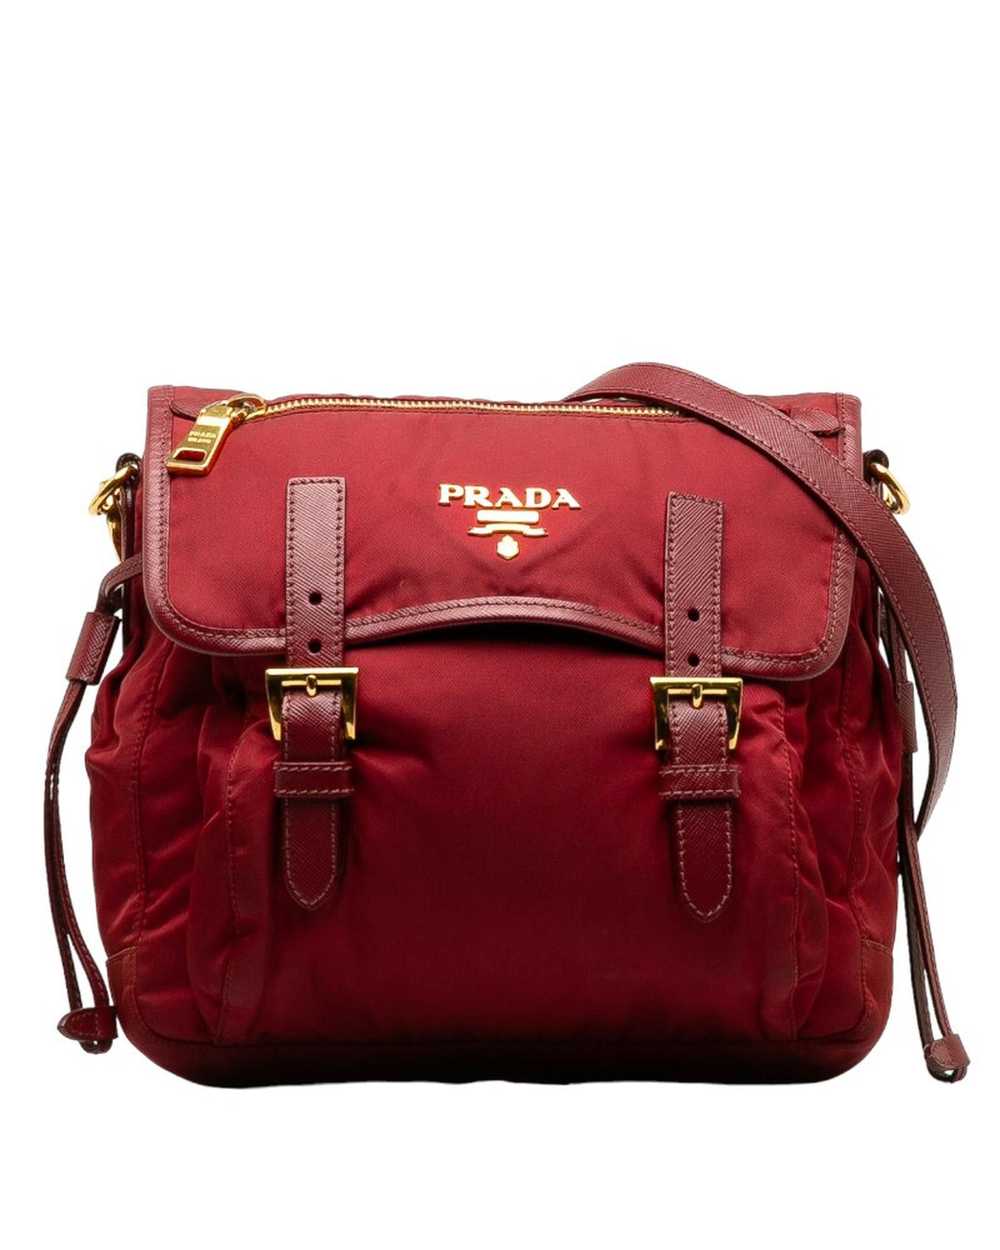 Prada Rose Gold Tessuto Messenger Bag in AB Condi… - image 1